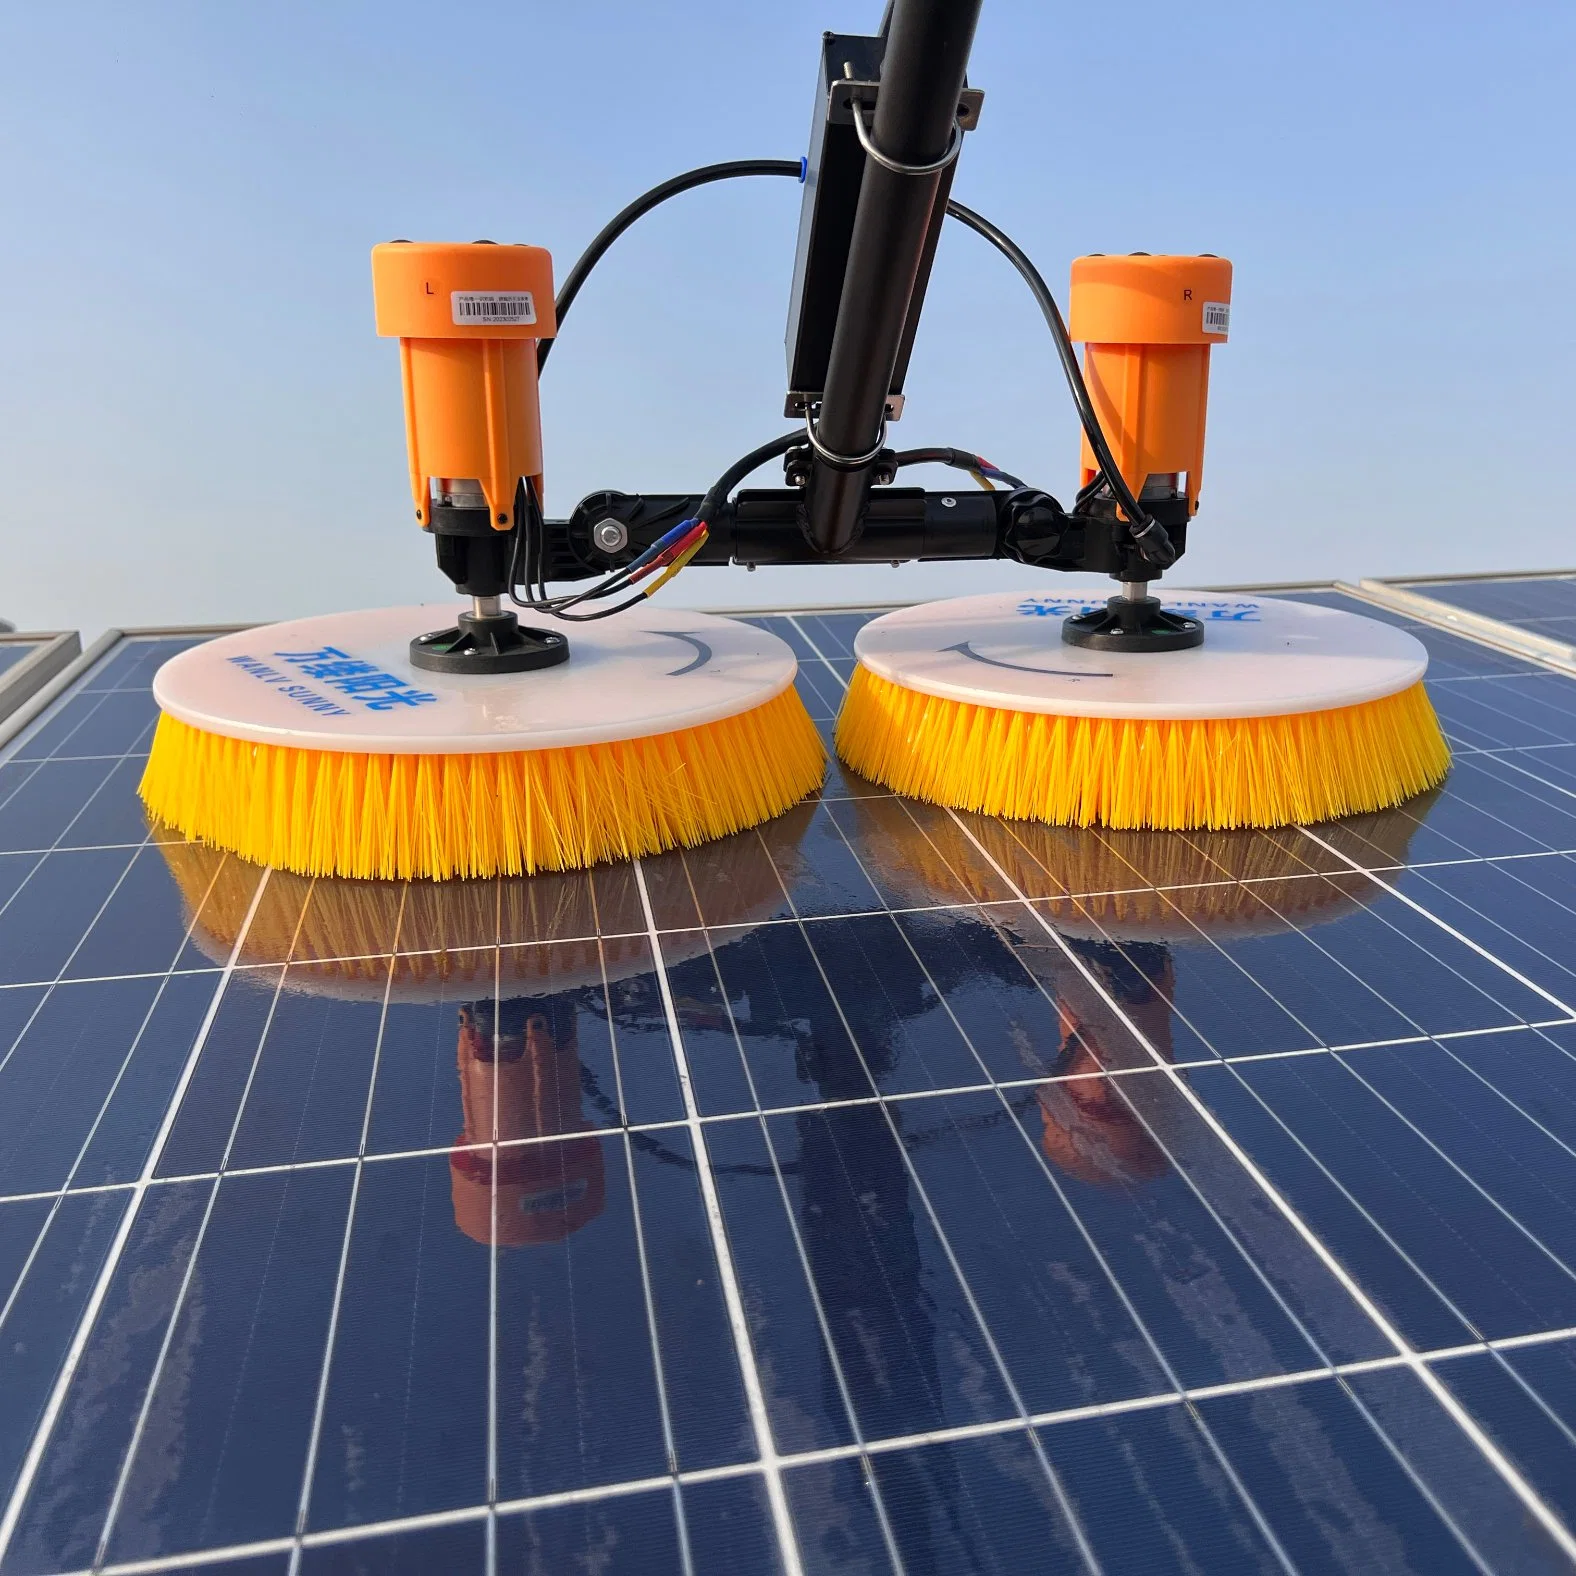 Equipement de nettoyage de panneau solaire à tige télescopique en alliage d'aluminium de 5.5 M. Brosse de nettoyage pour panneau solaire rotatif à pôle alimenté en eau Lithium Power